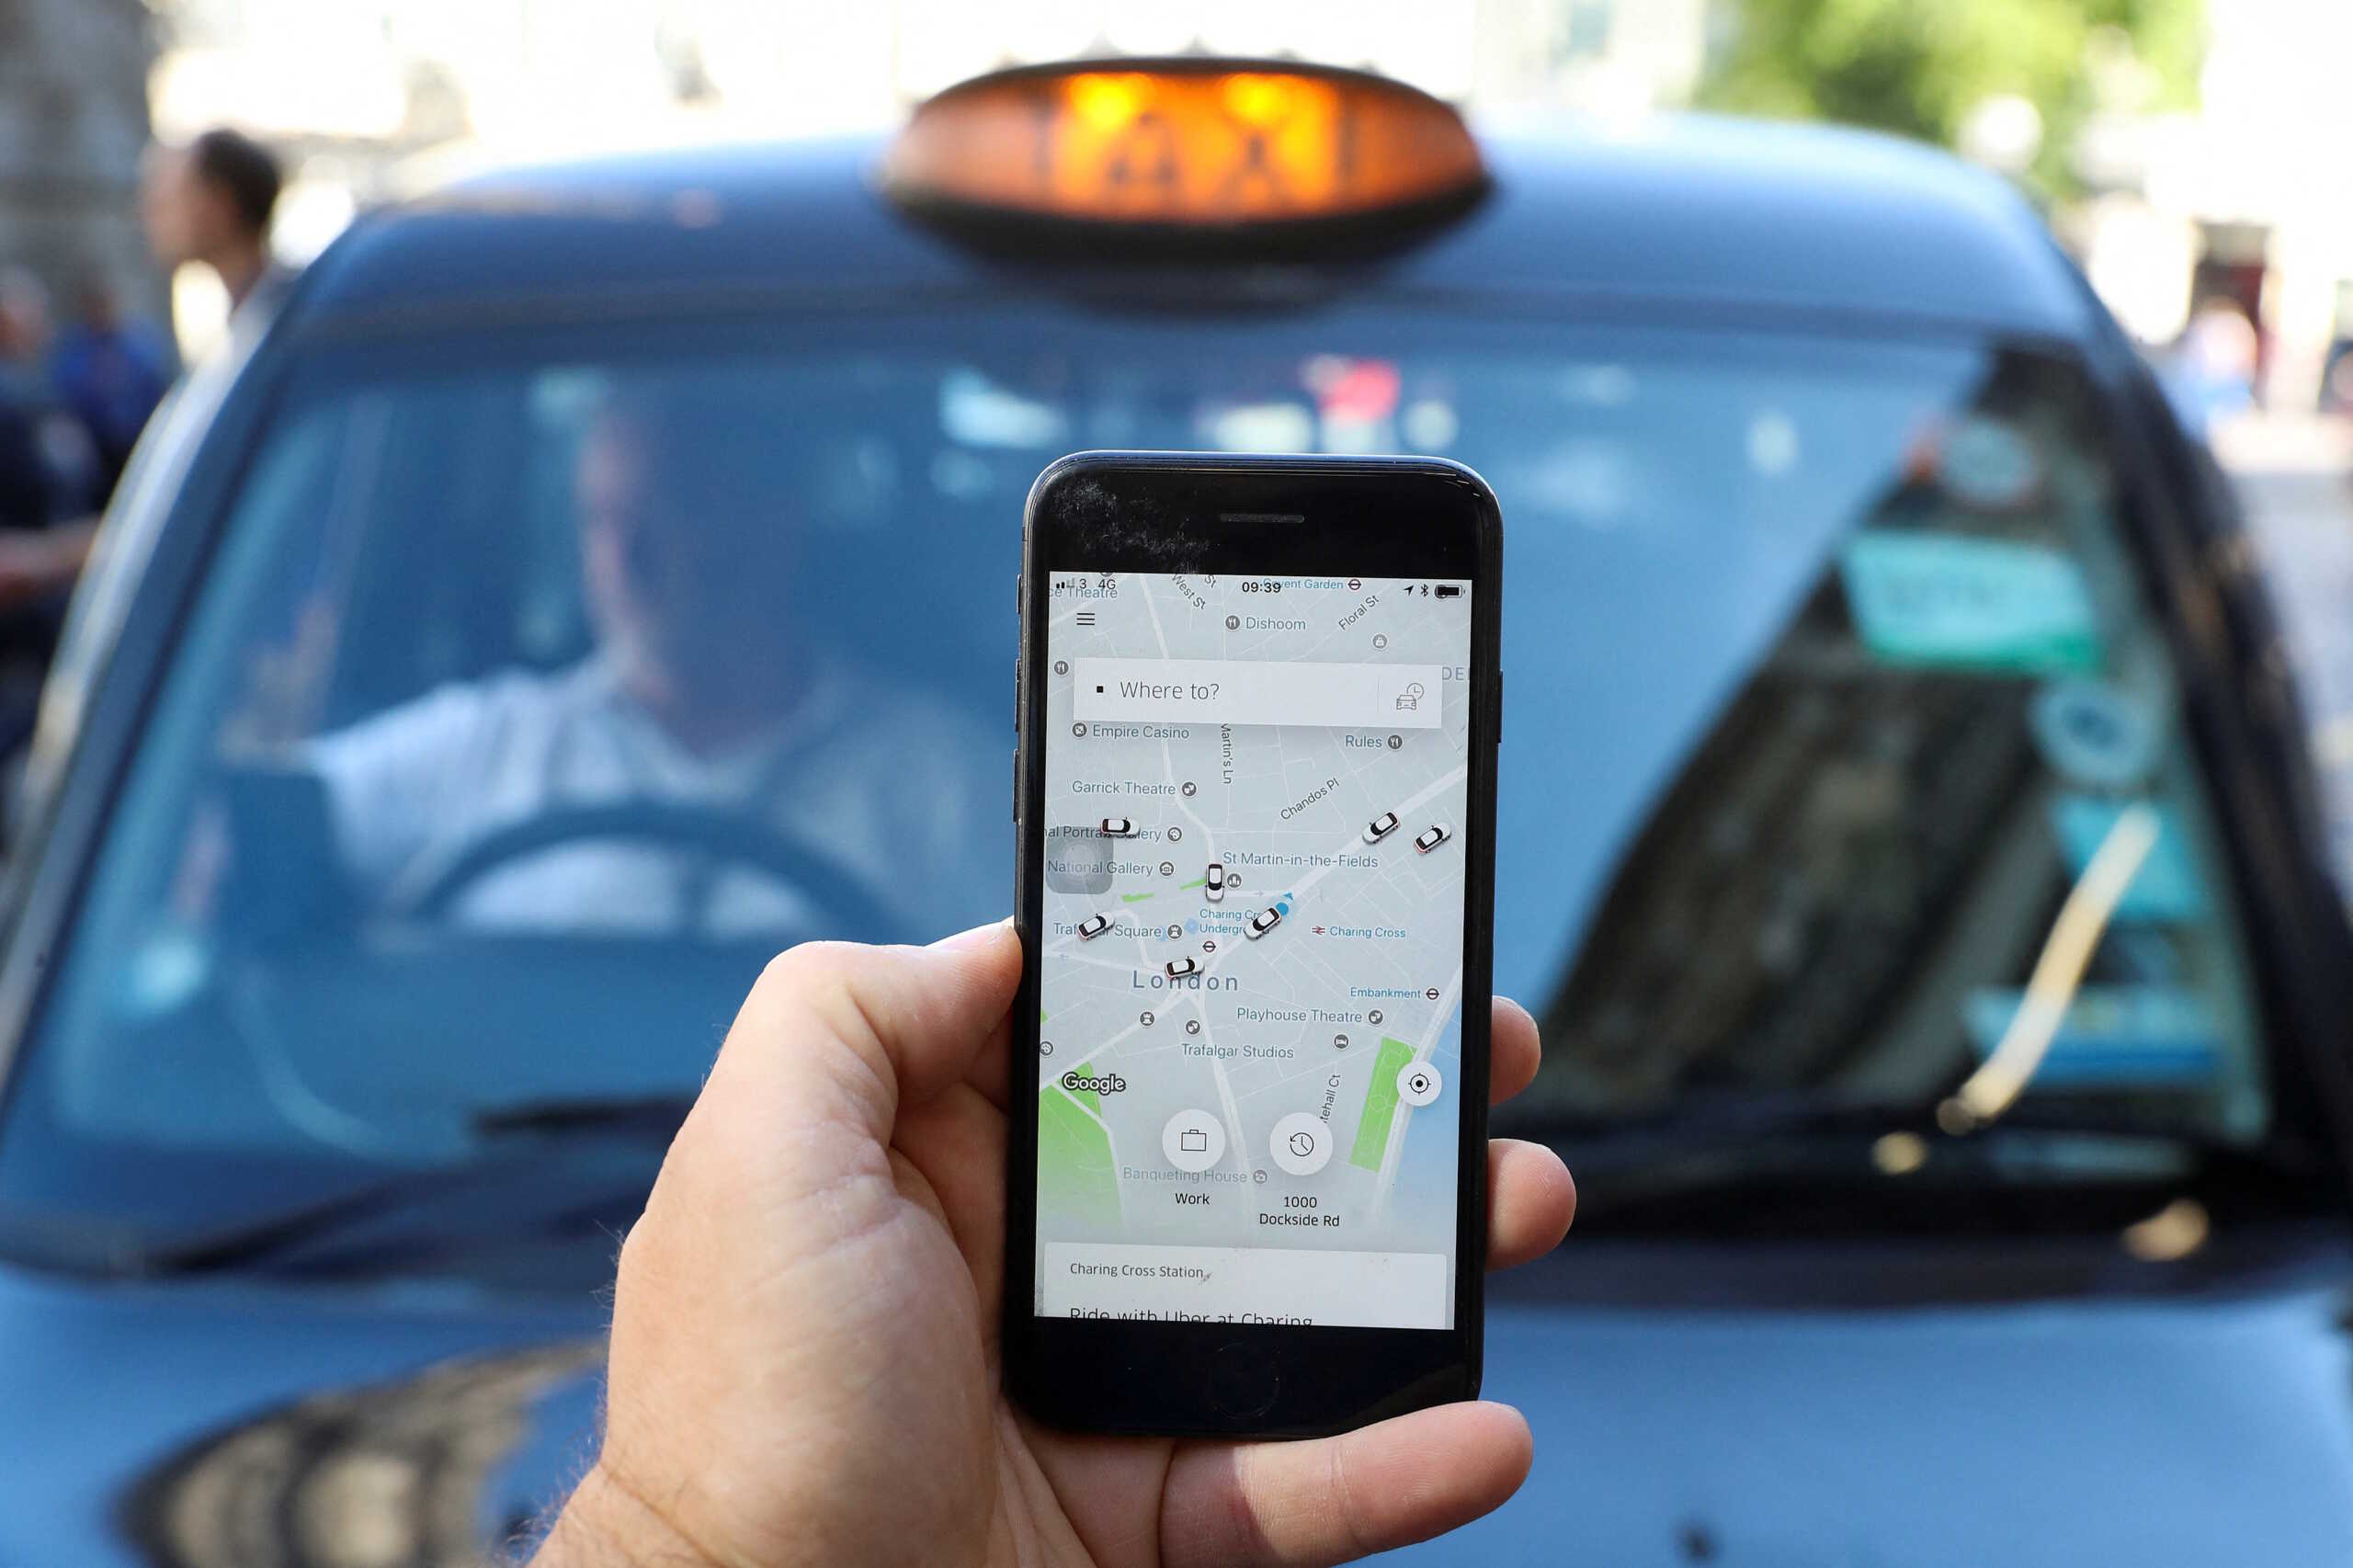 Ευρωπαϊκό μπλόκο στον νόμο για τους εργαζόμενους σε ψηφιακές πλατφόρμες όπως οι Uber και Deliveroo